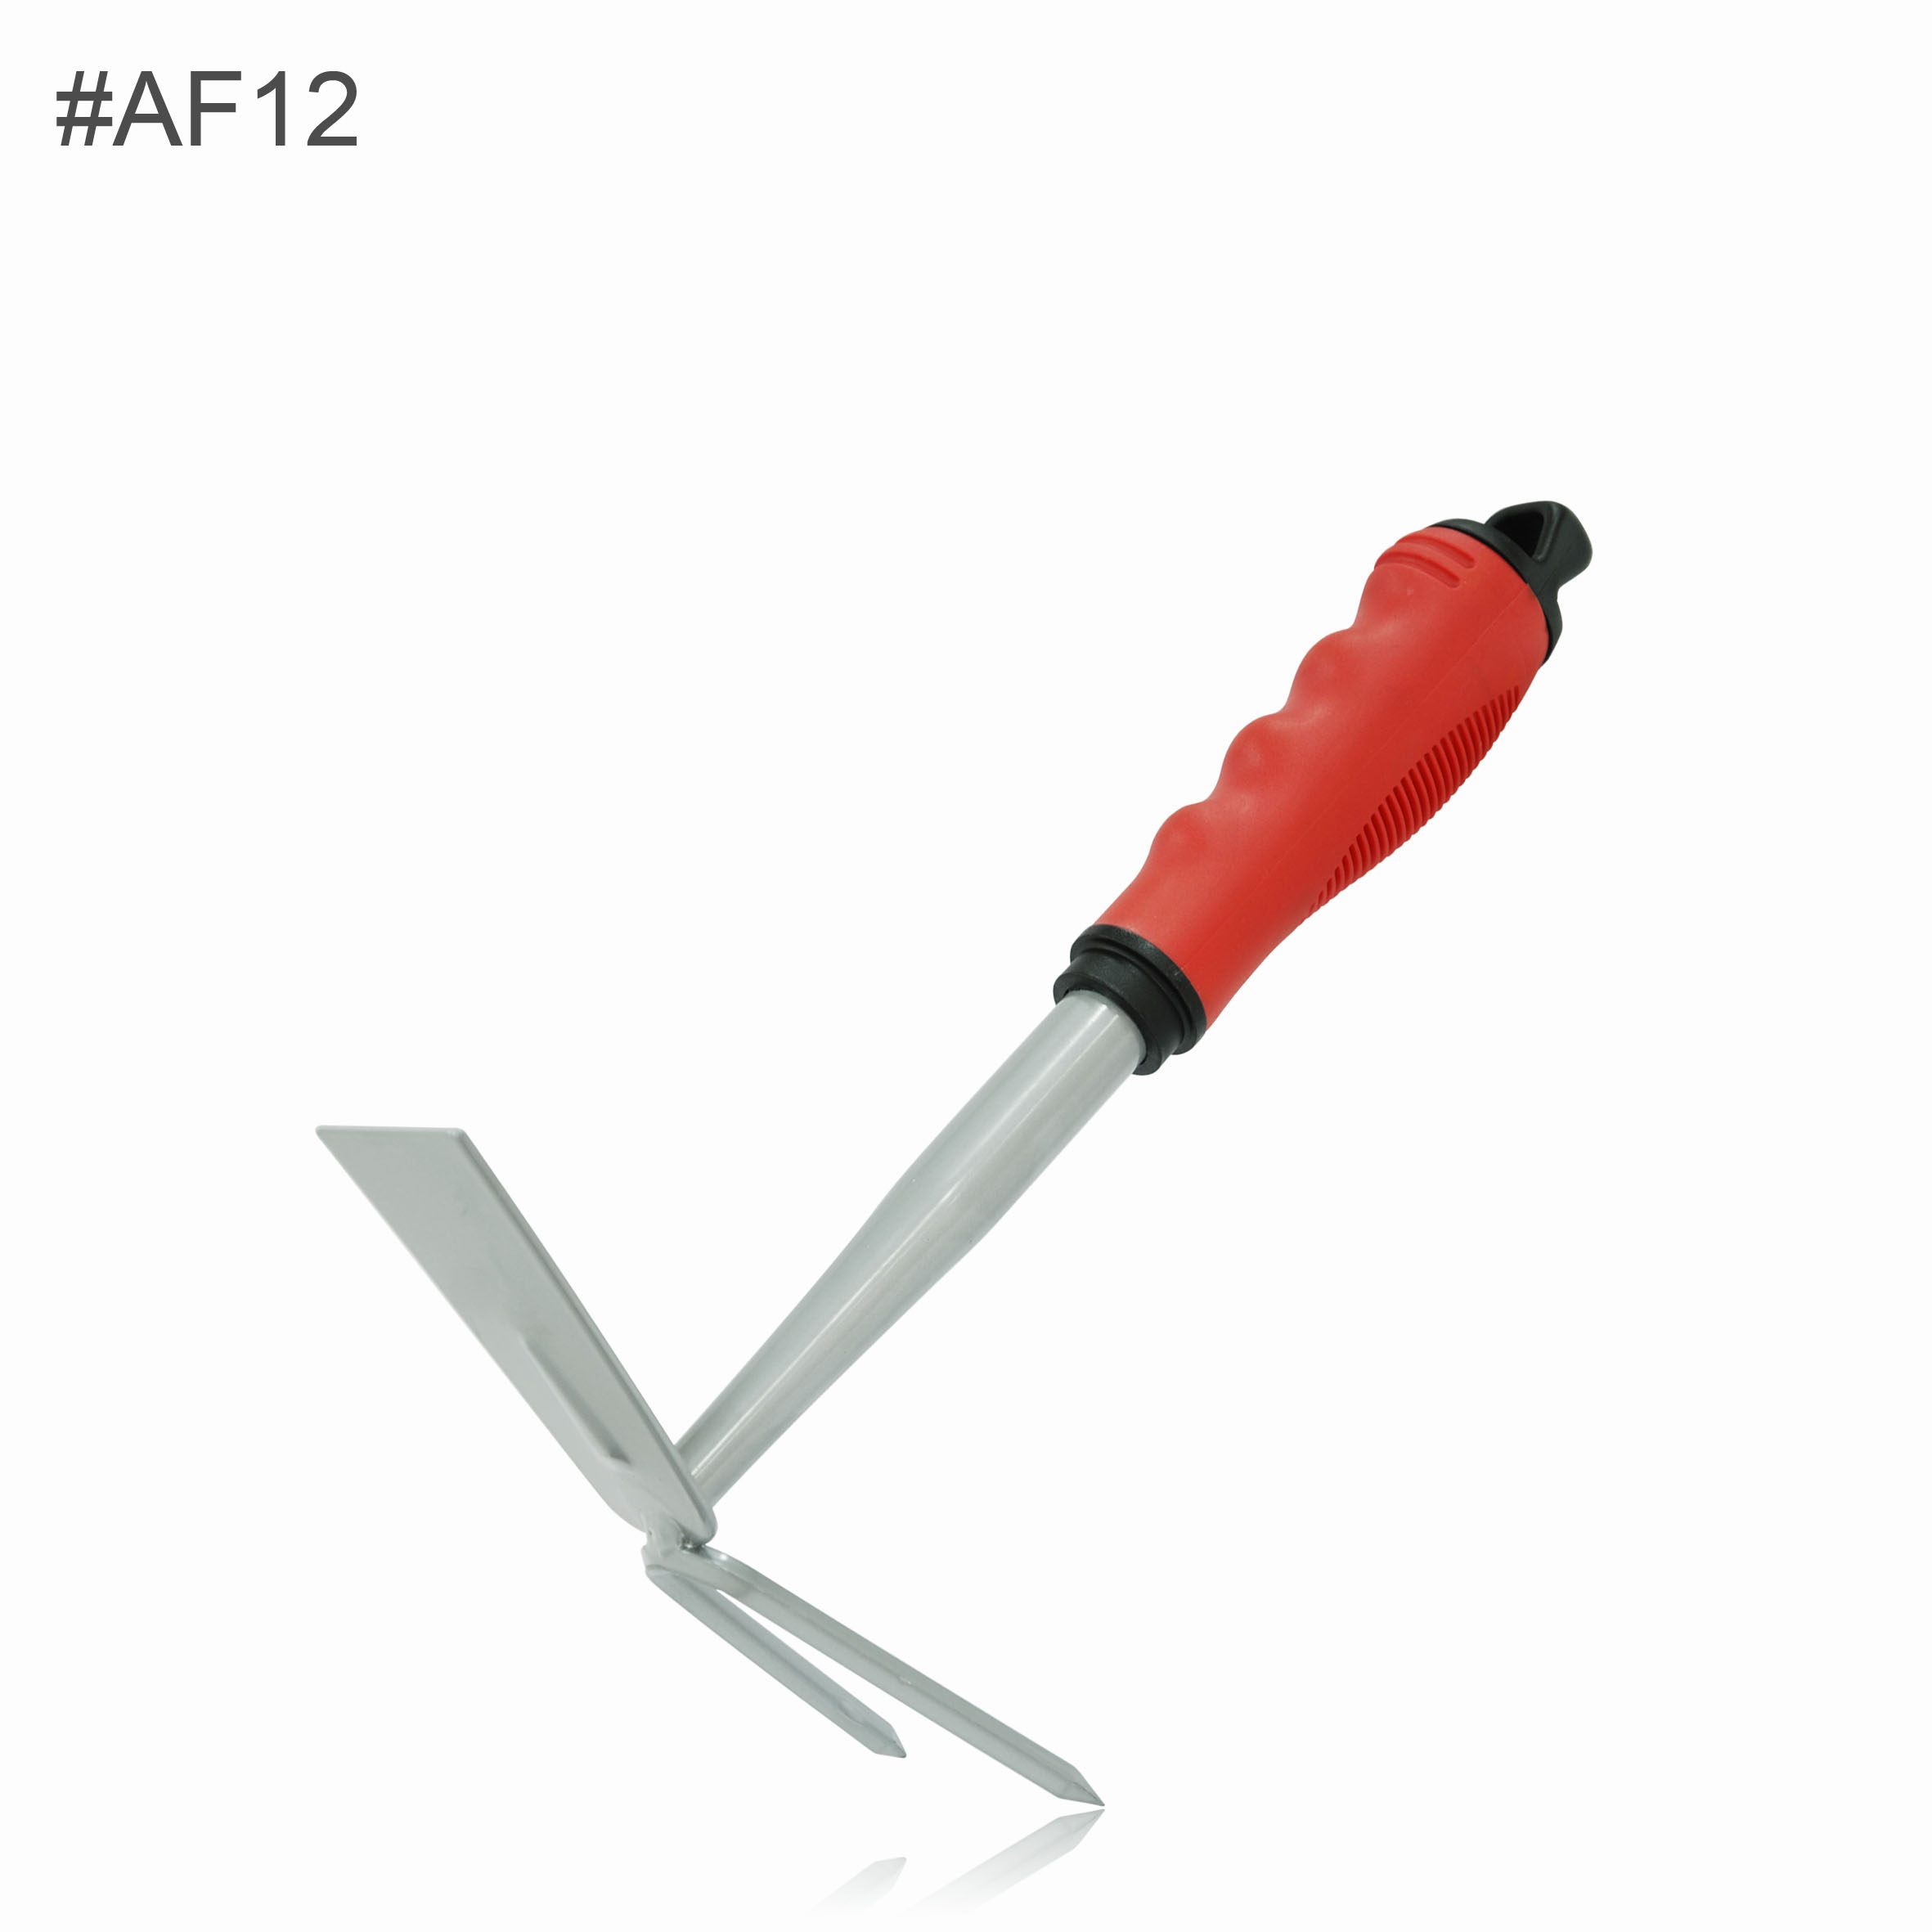 AF12